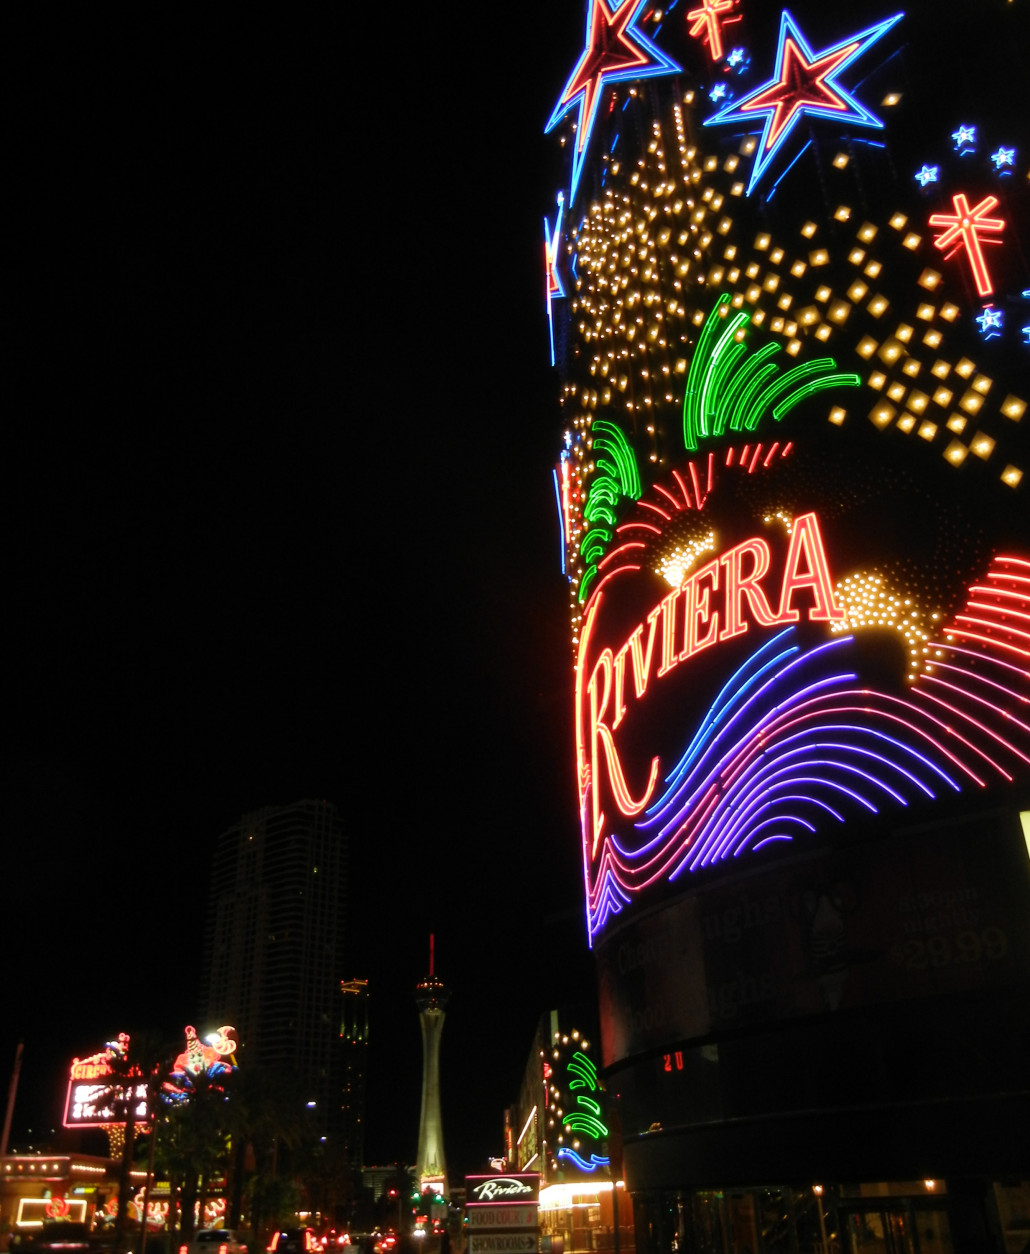 Iconic Riviera Hotel in Las Vegas closes